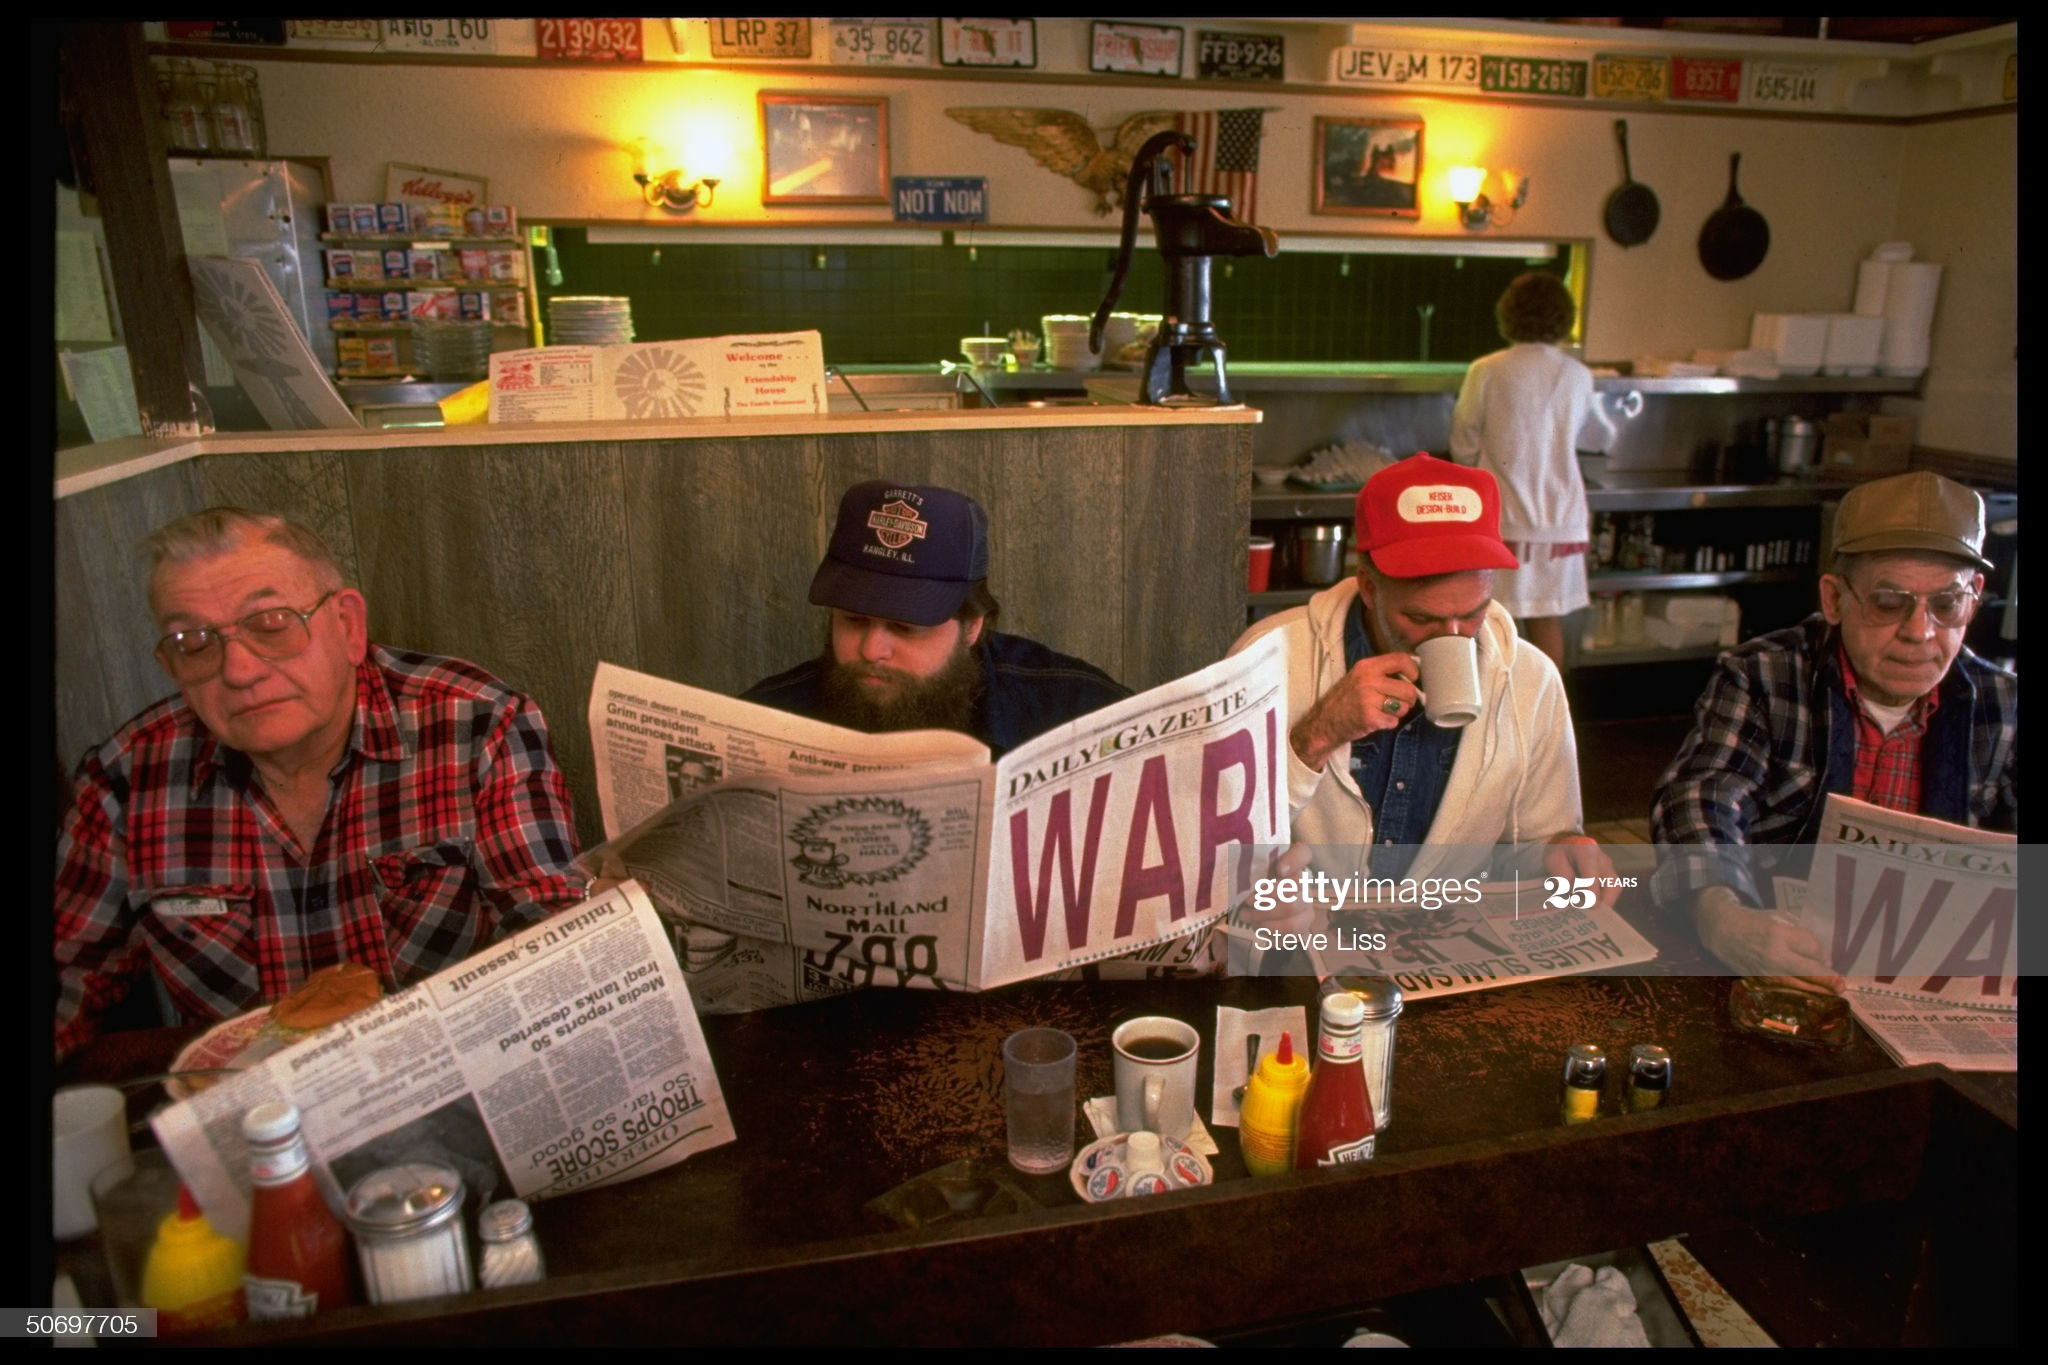 men-reading-local-daily-gazette-newspaper-w-healine-war-at-friendship-picture-id50697705